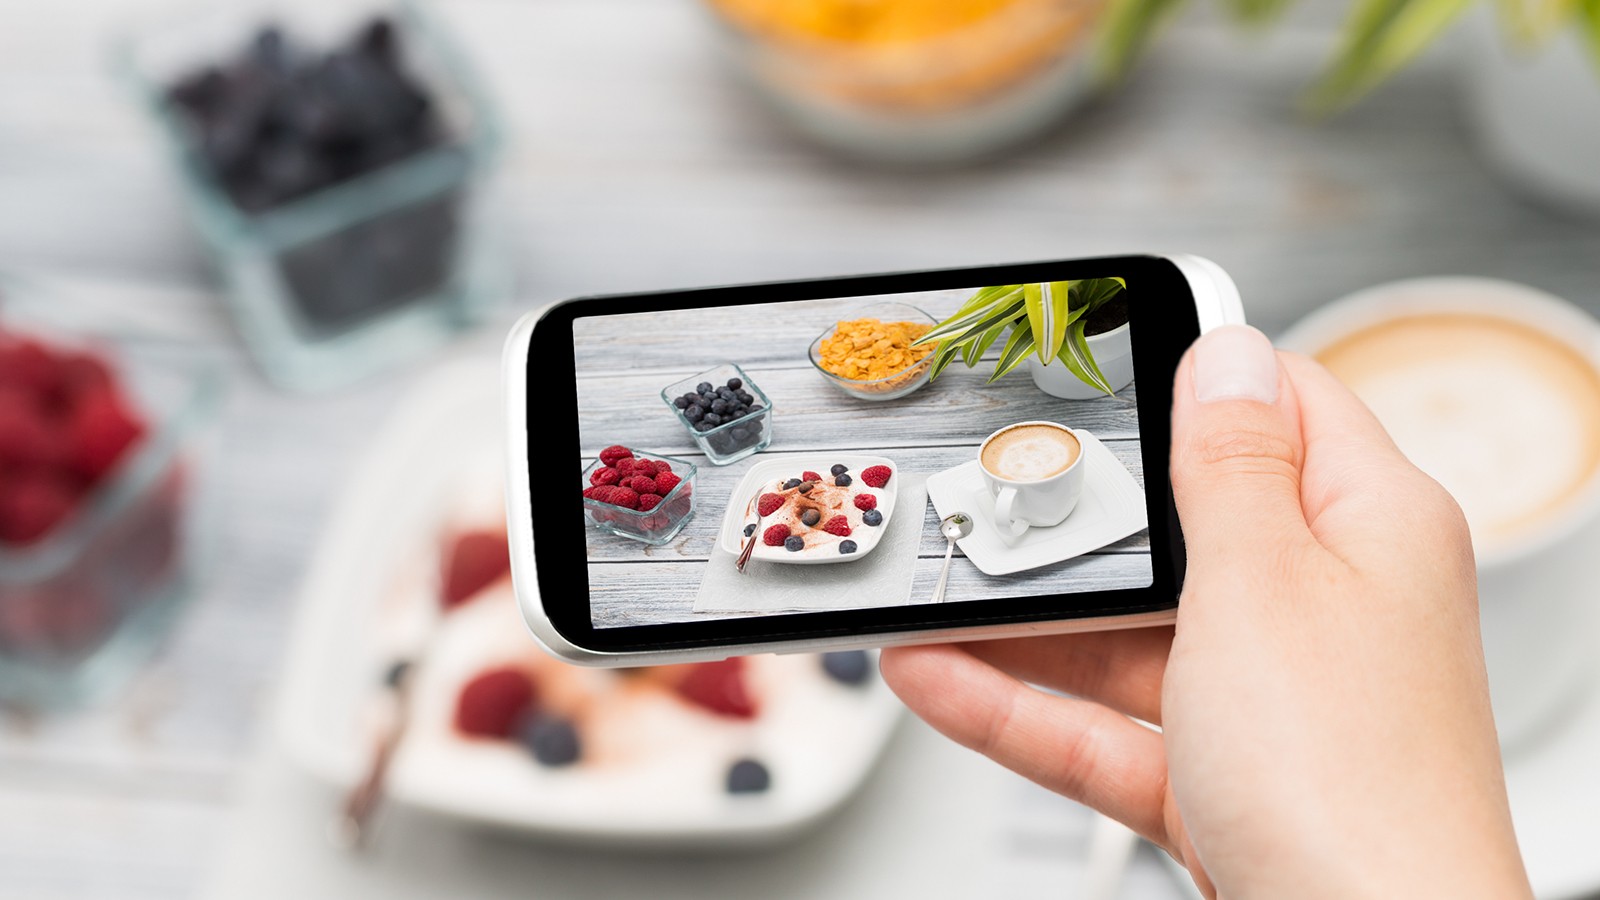 Smartphone shot food photo.